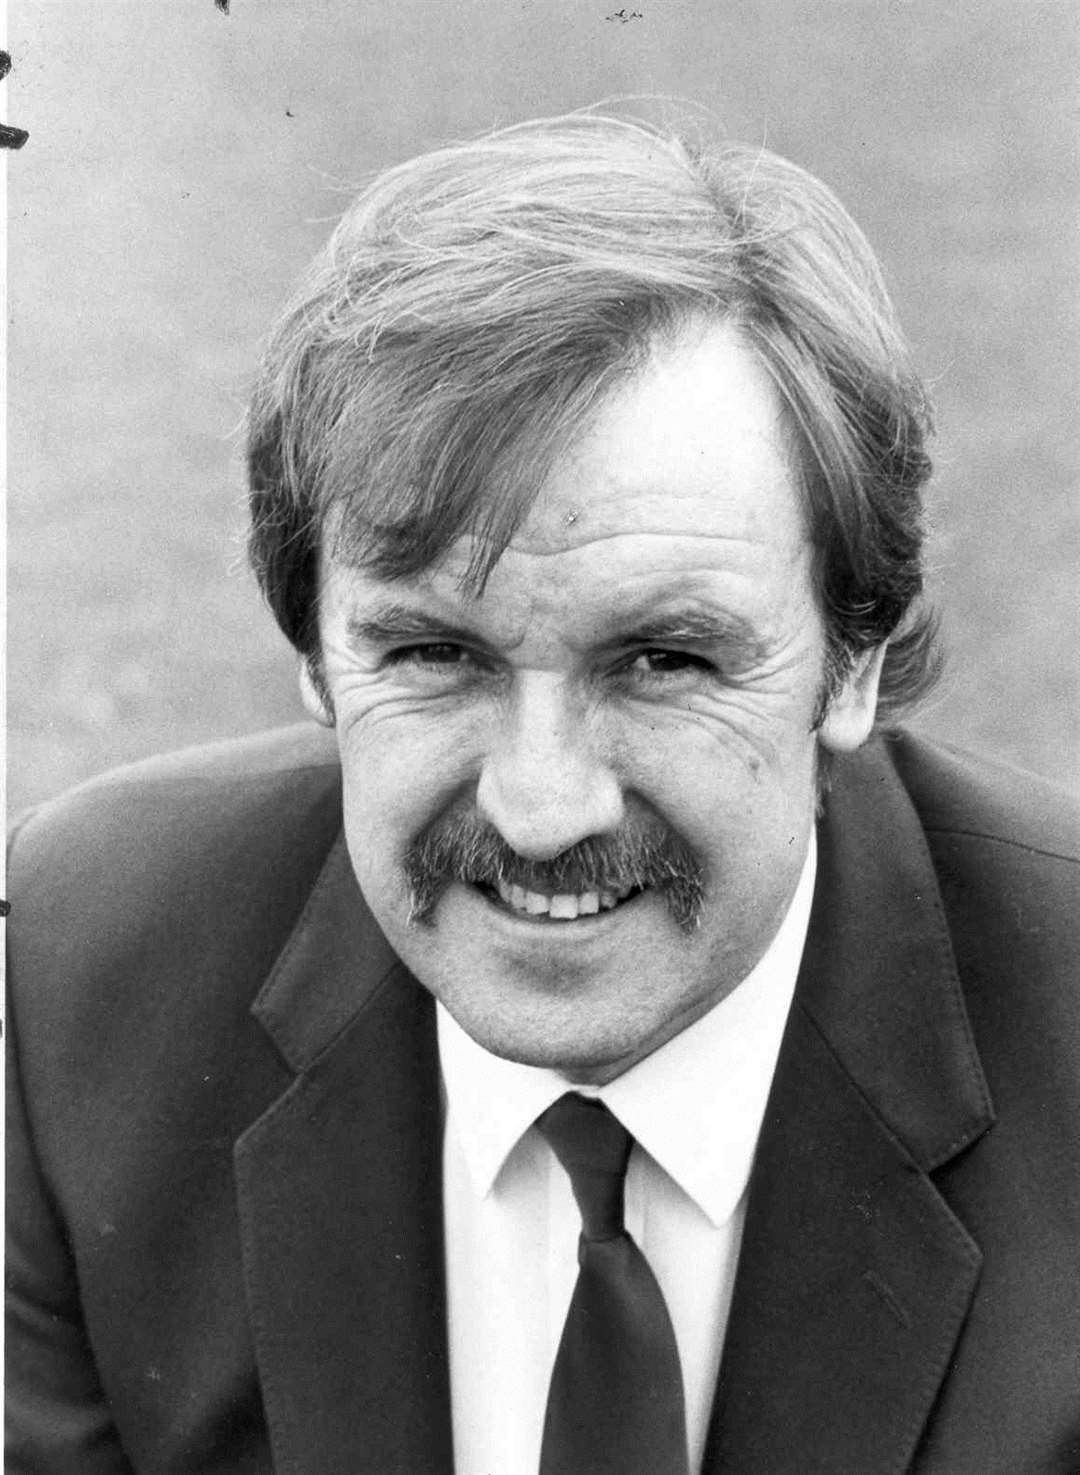 Bill Williams, pictured in 1984